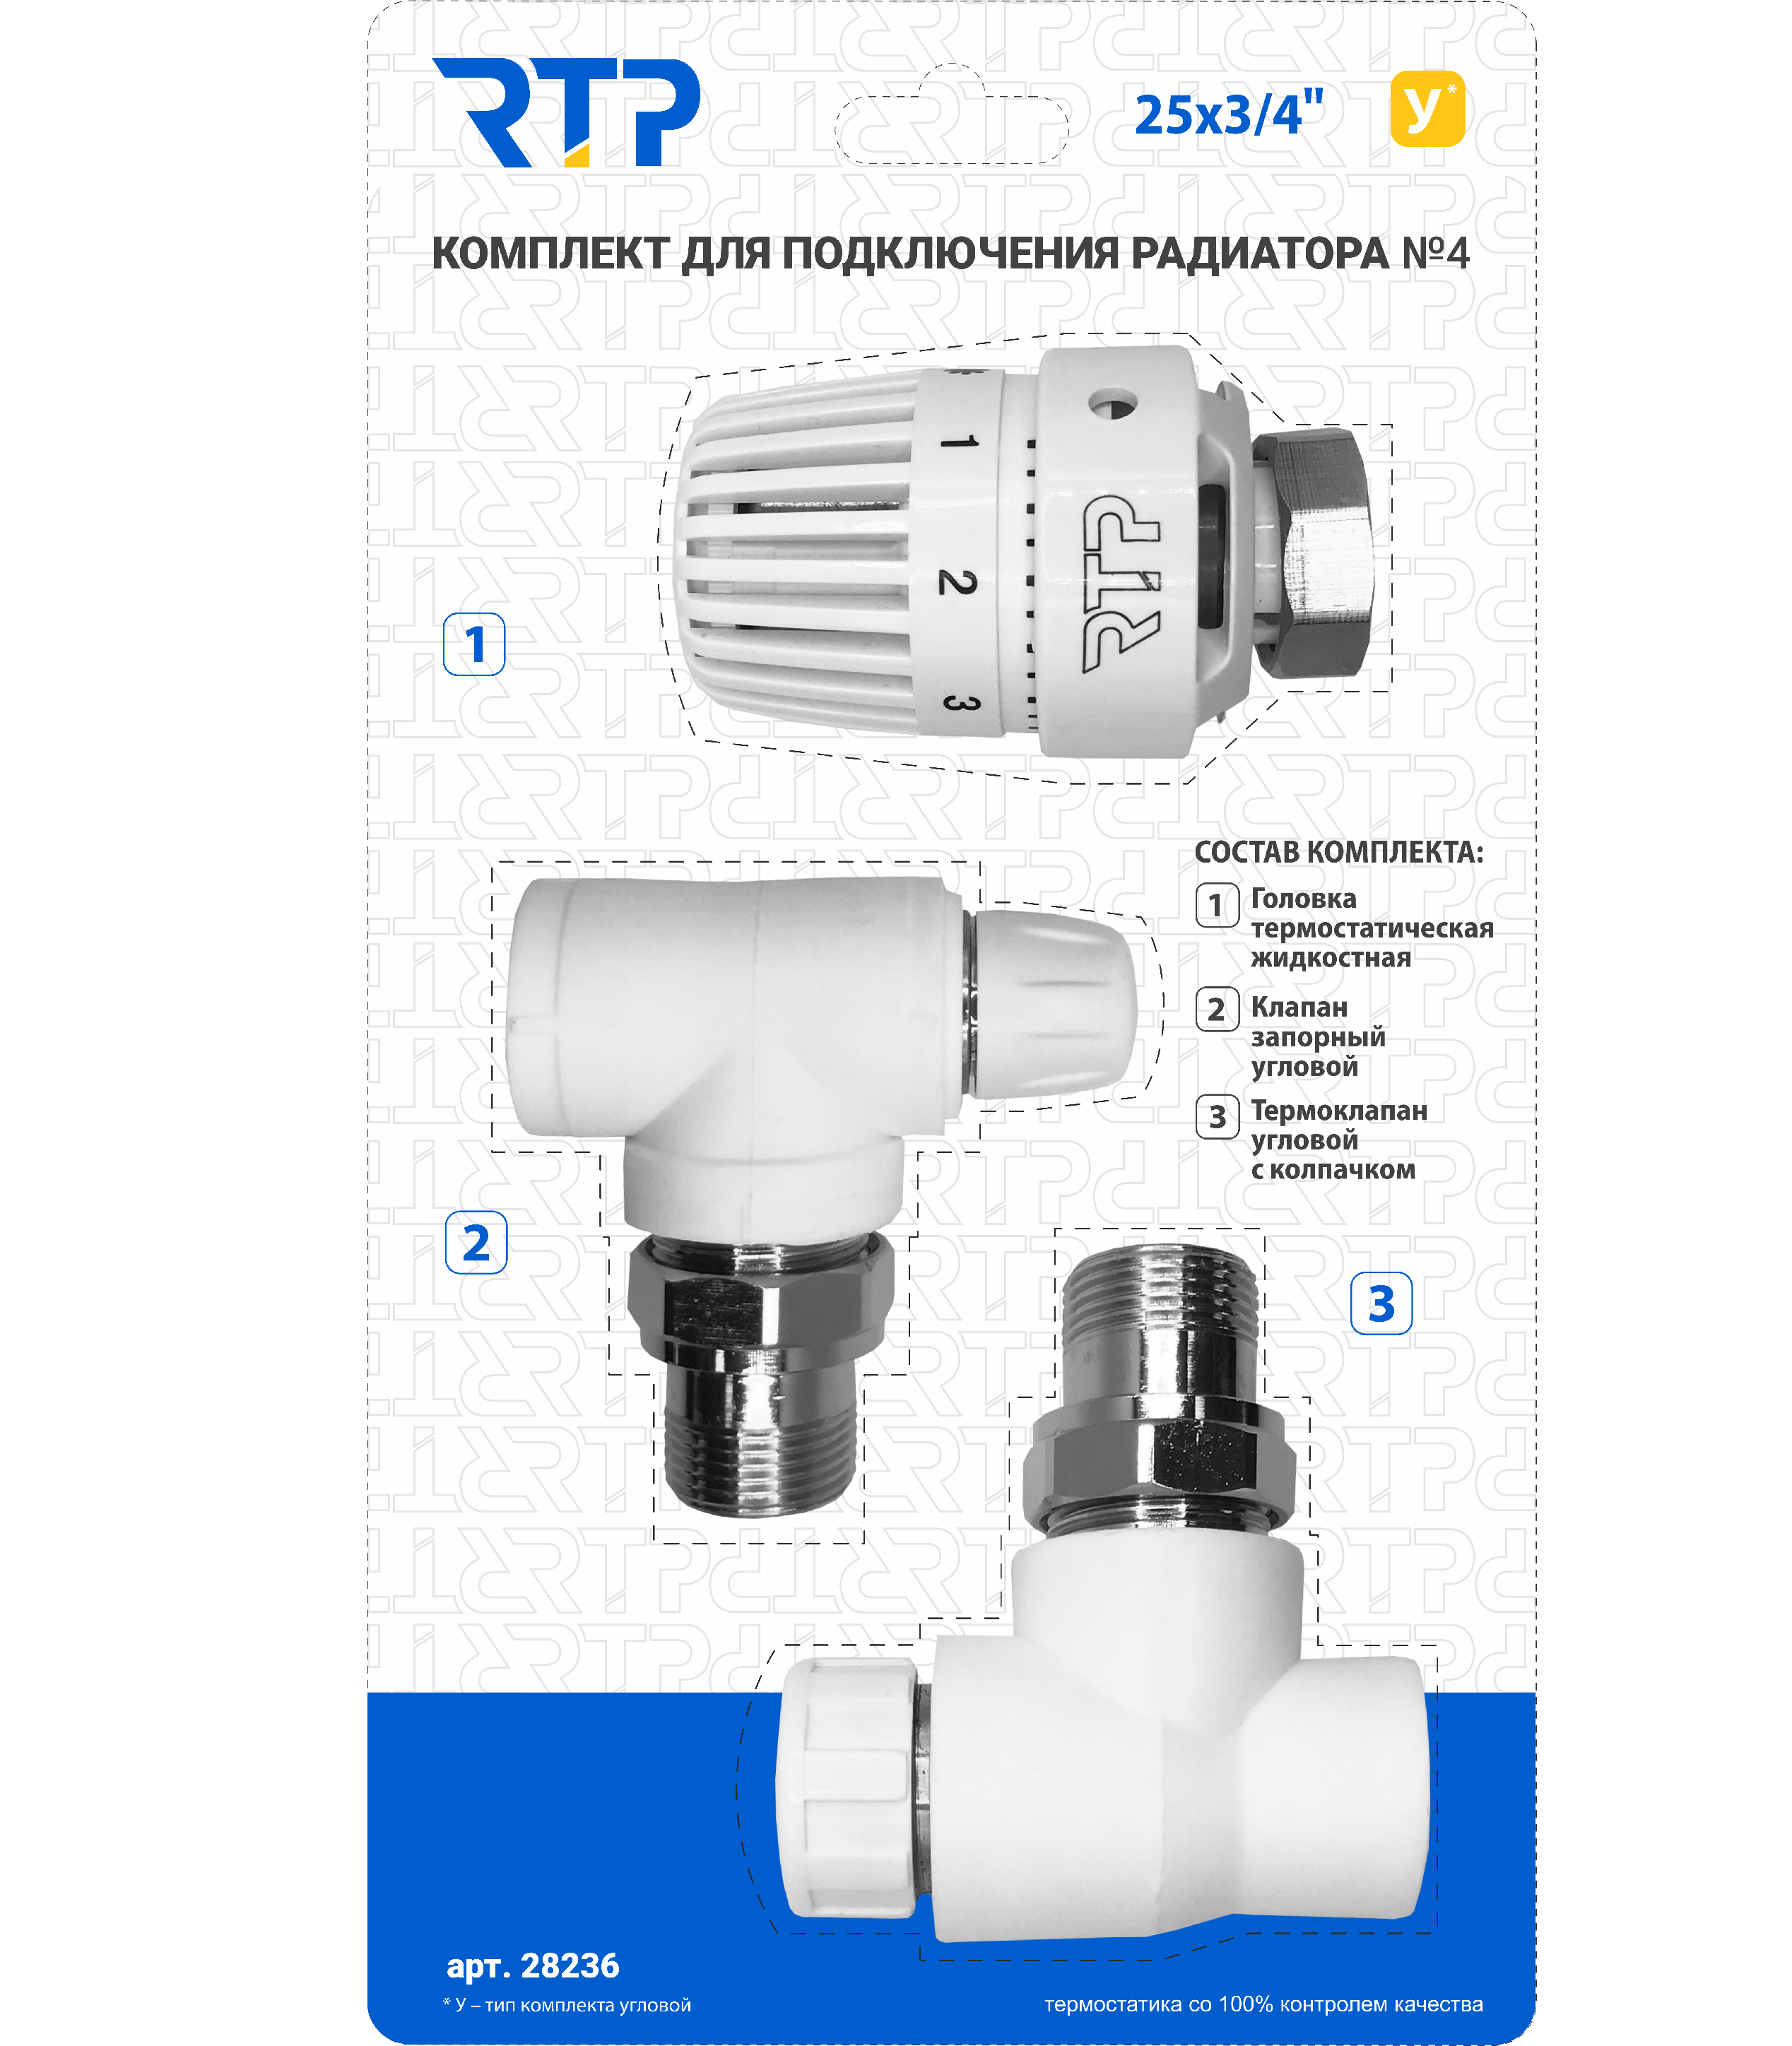 Комплект № 4 (Термостатический клапан угловой с колпачком, клапан запорный угловой, термостатическая головка) PP-R 25х3/4, RTP